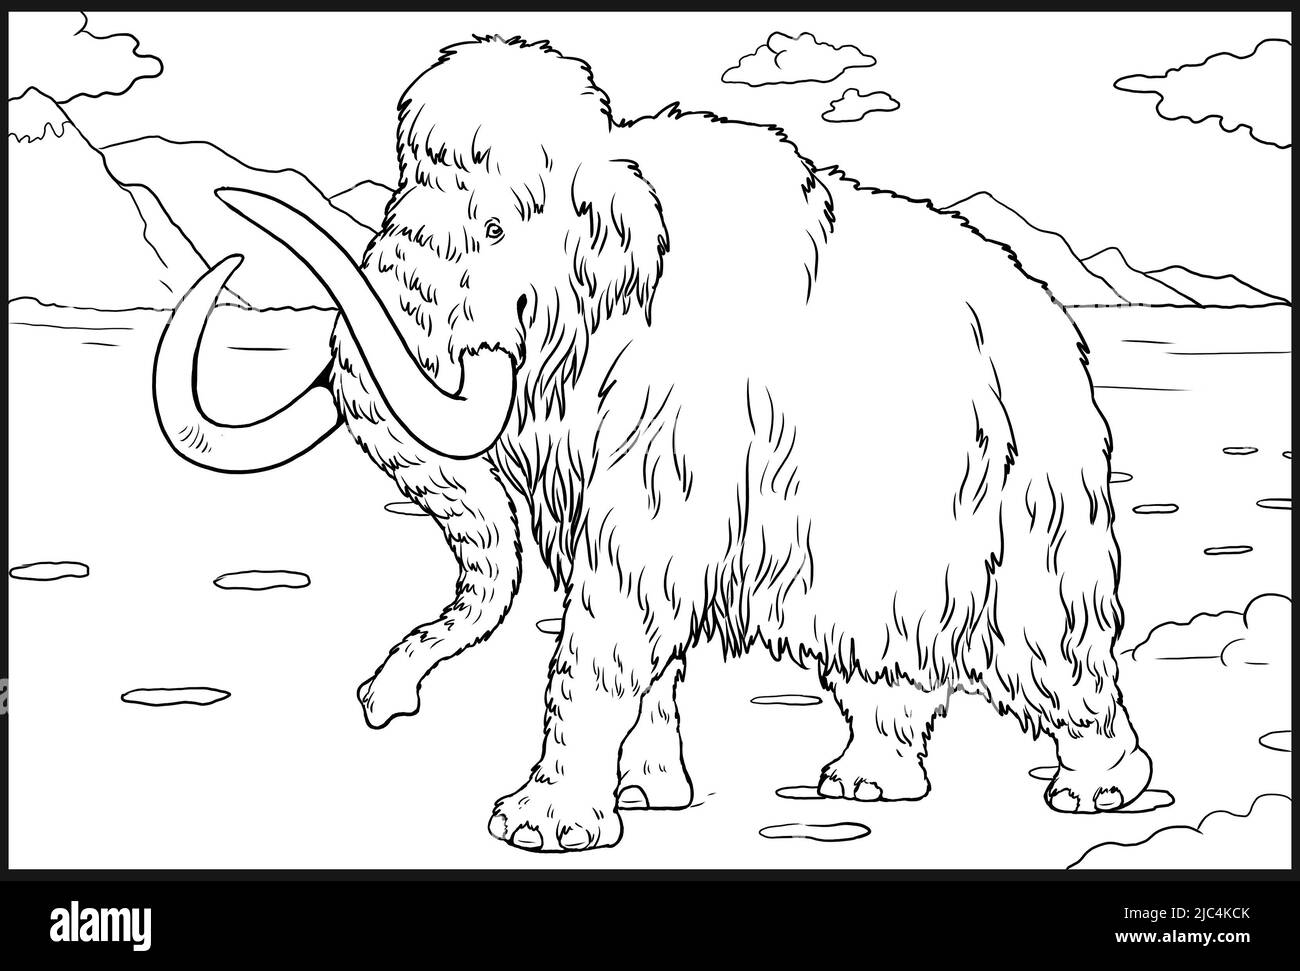 Animaux préhistoriques. Illustration avec éléphant éteint - mammouth. Dessin pour livre de coloriage. Banque D'Images